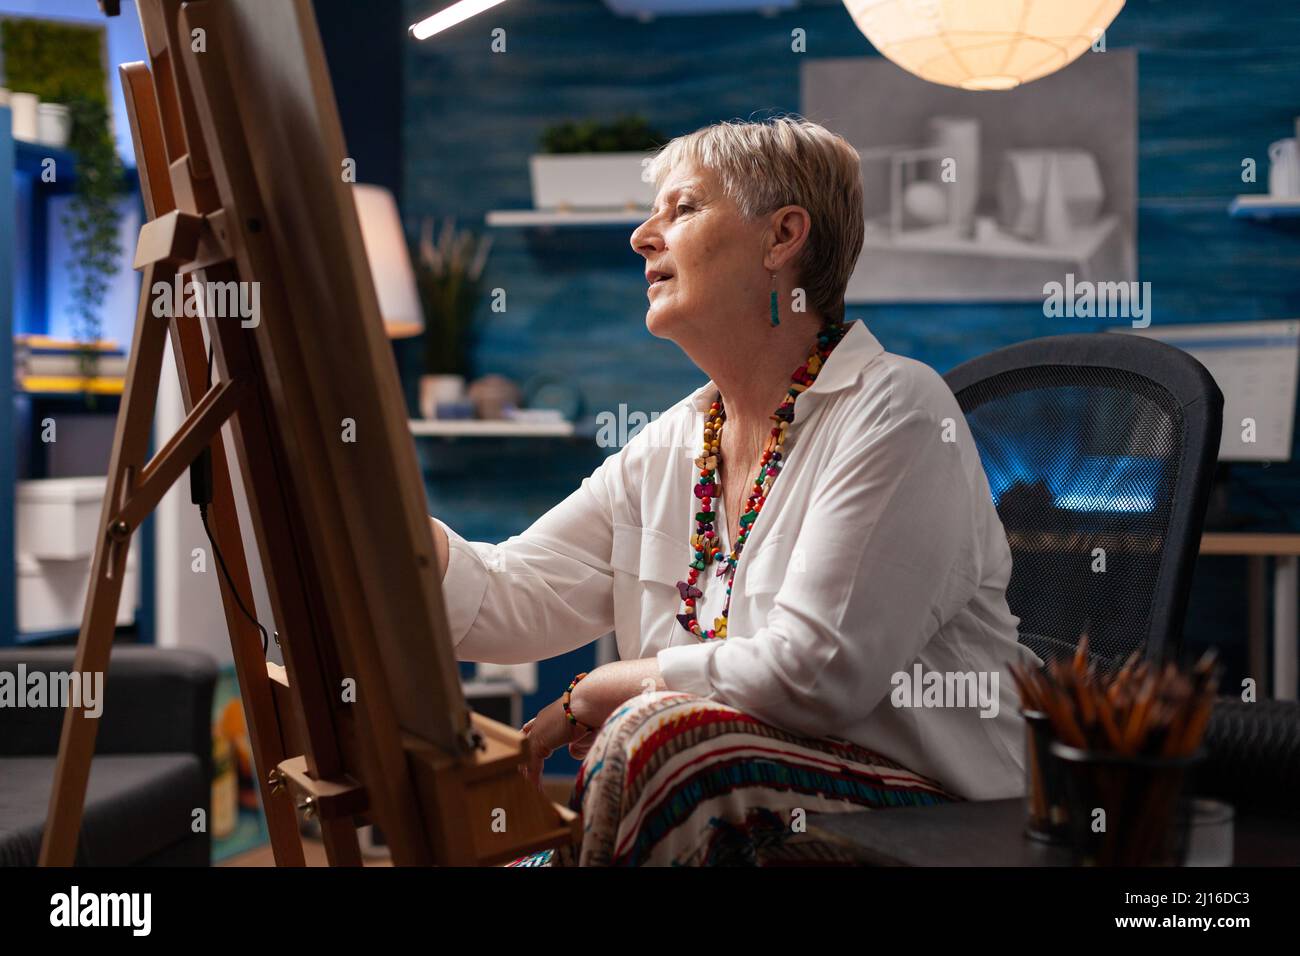 Portrait d'un artiste retraité inspiré devant un chevalet, dessinant un chef-d'œuvre d'art créatif à l'aide d'un crayon tout en étant assis. Femme sénior qui crée un croquis de charbon de bois sur papier dans un studio à domicile. Banque D'Images